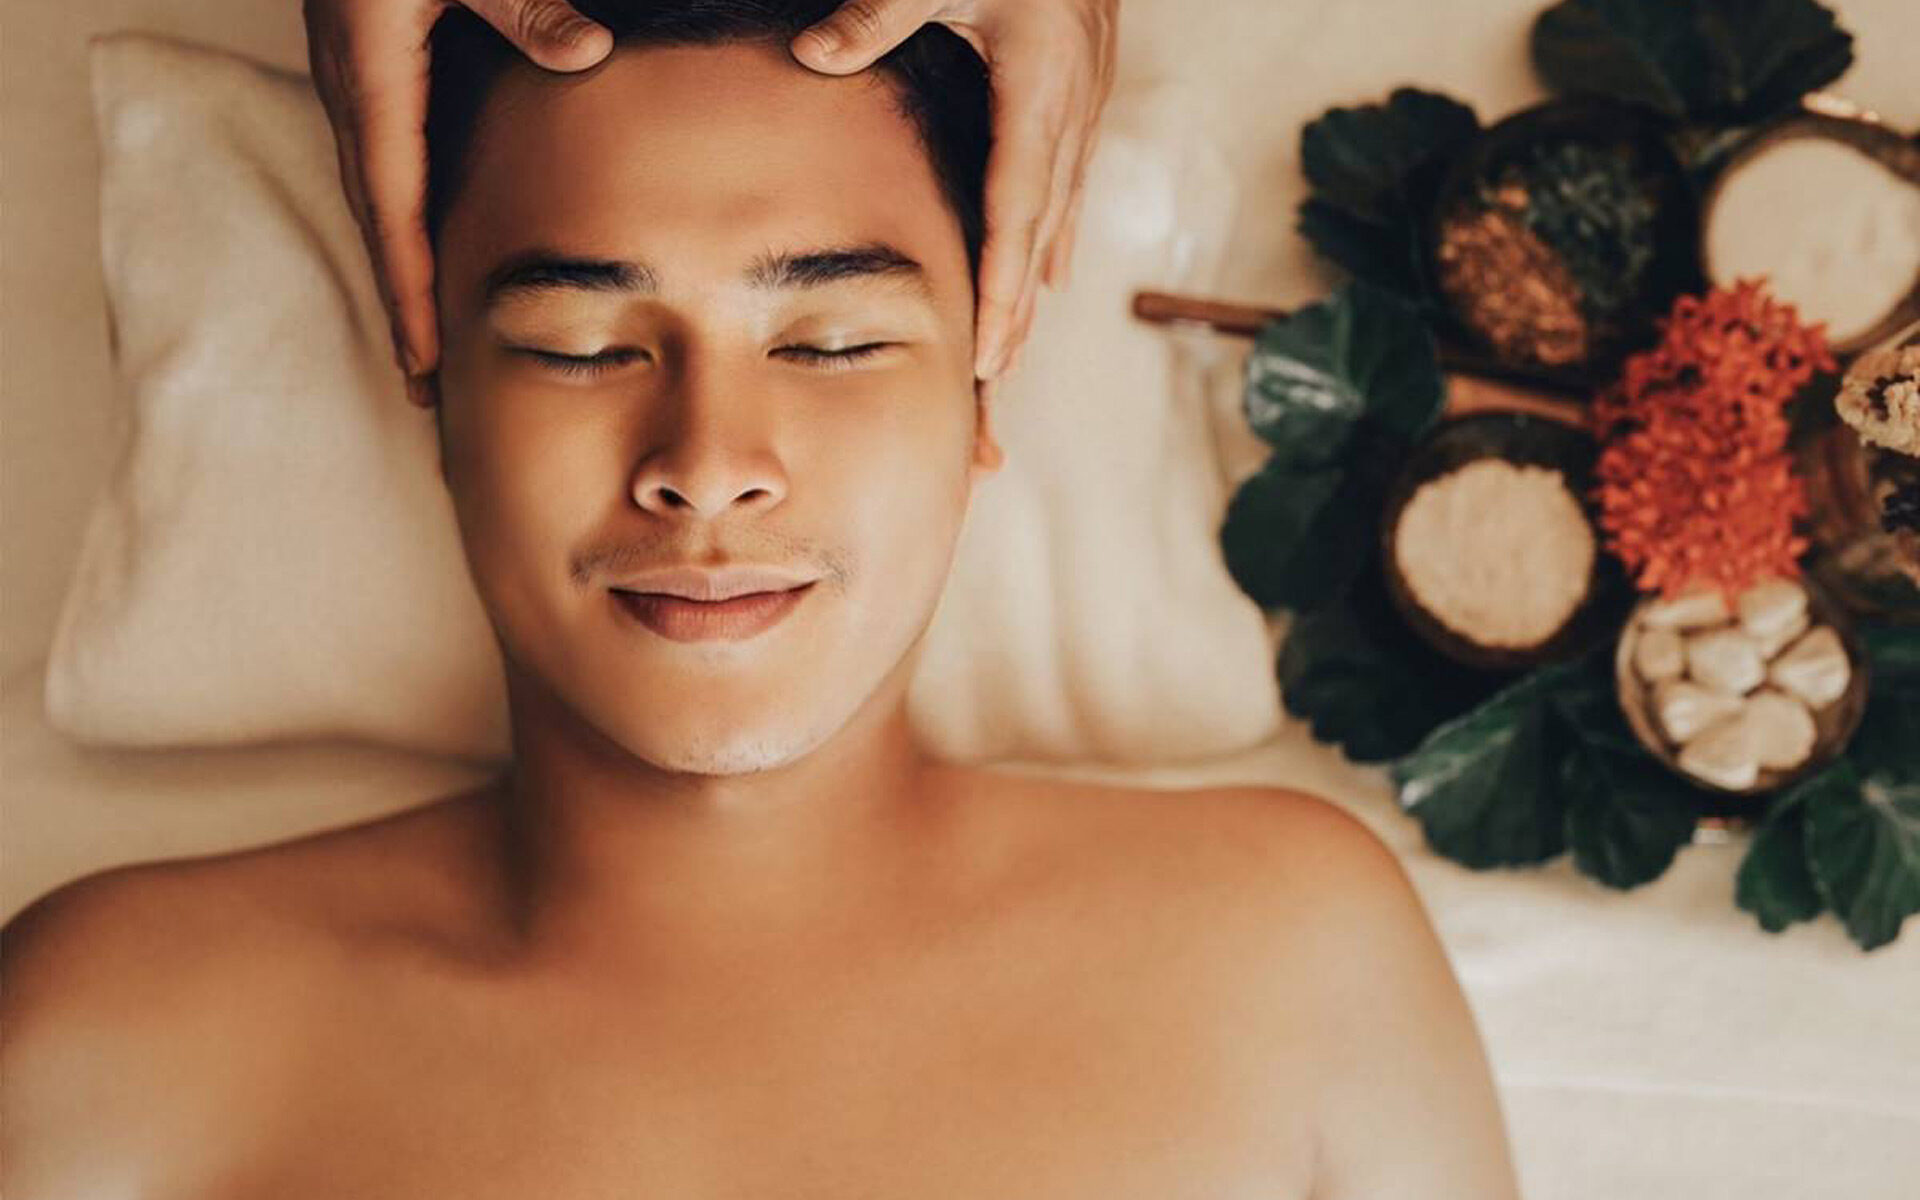 Relaxing massage in Phuket - Facial Phuket